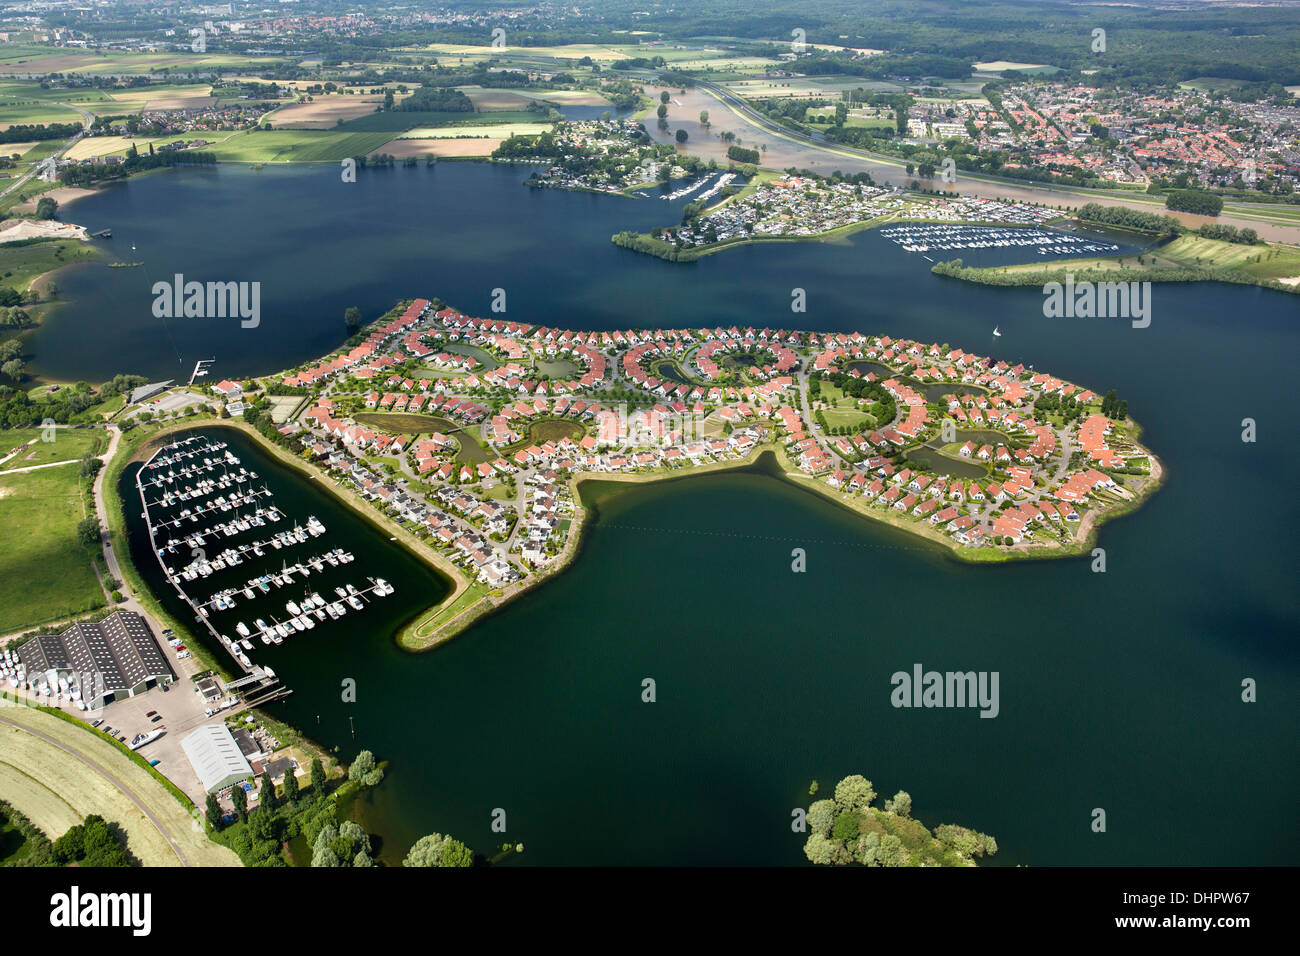 Niederlande, Rheden. Luxuriöser Bungalowpark genannt Riverparc, liegt auf einer Halbinsel in einem künstlich angelegten See. Luftbild Stockfoto